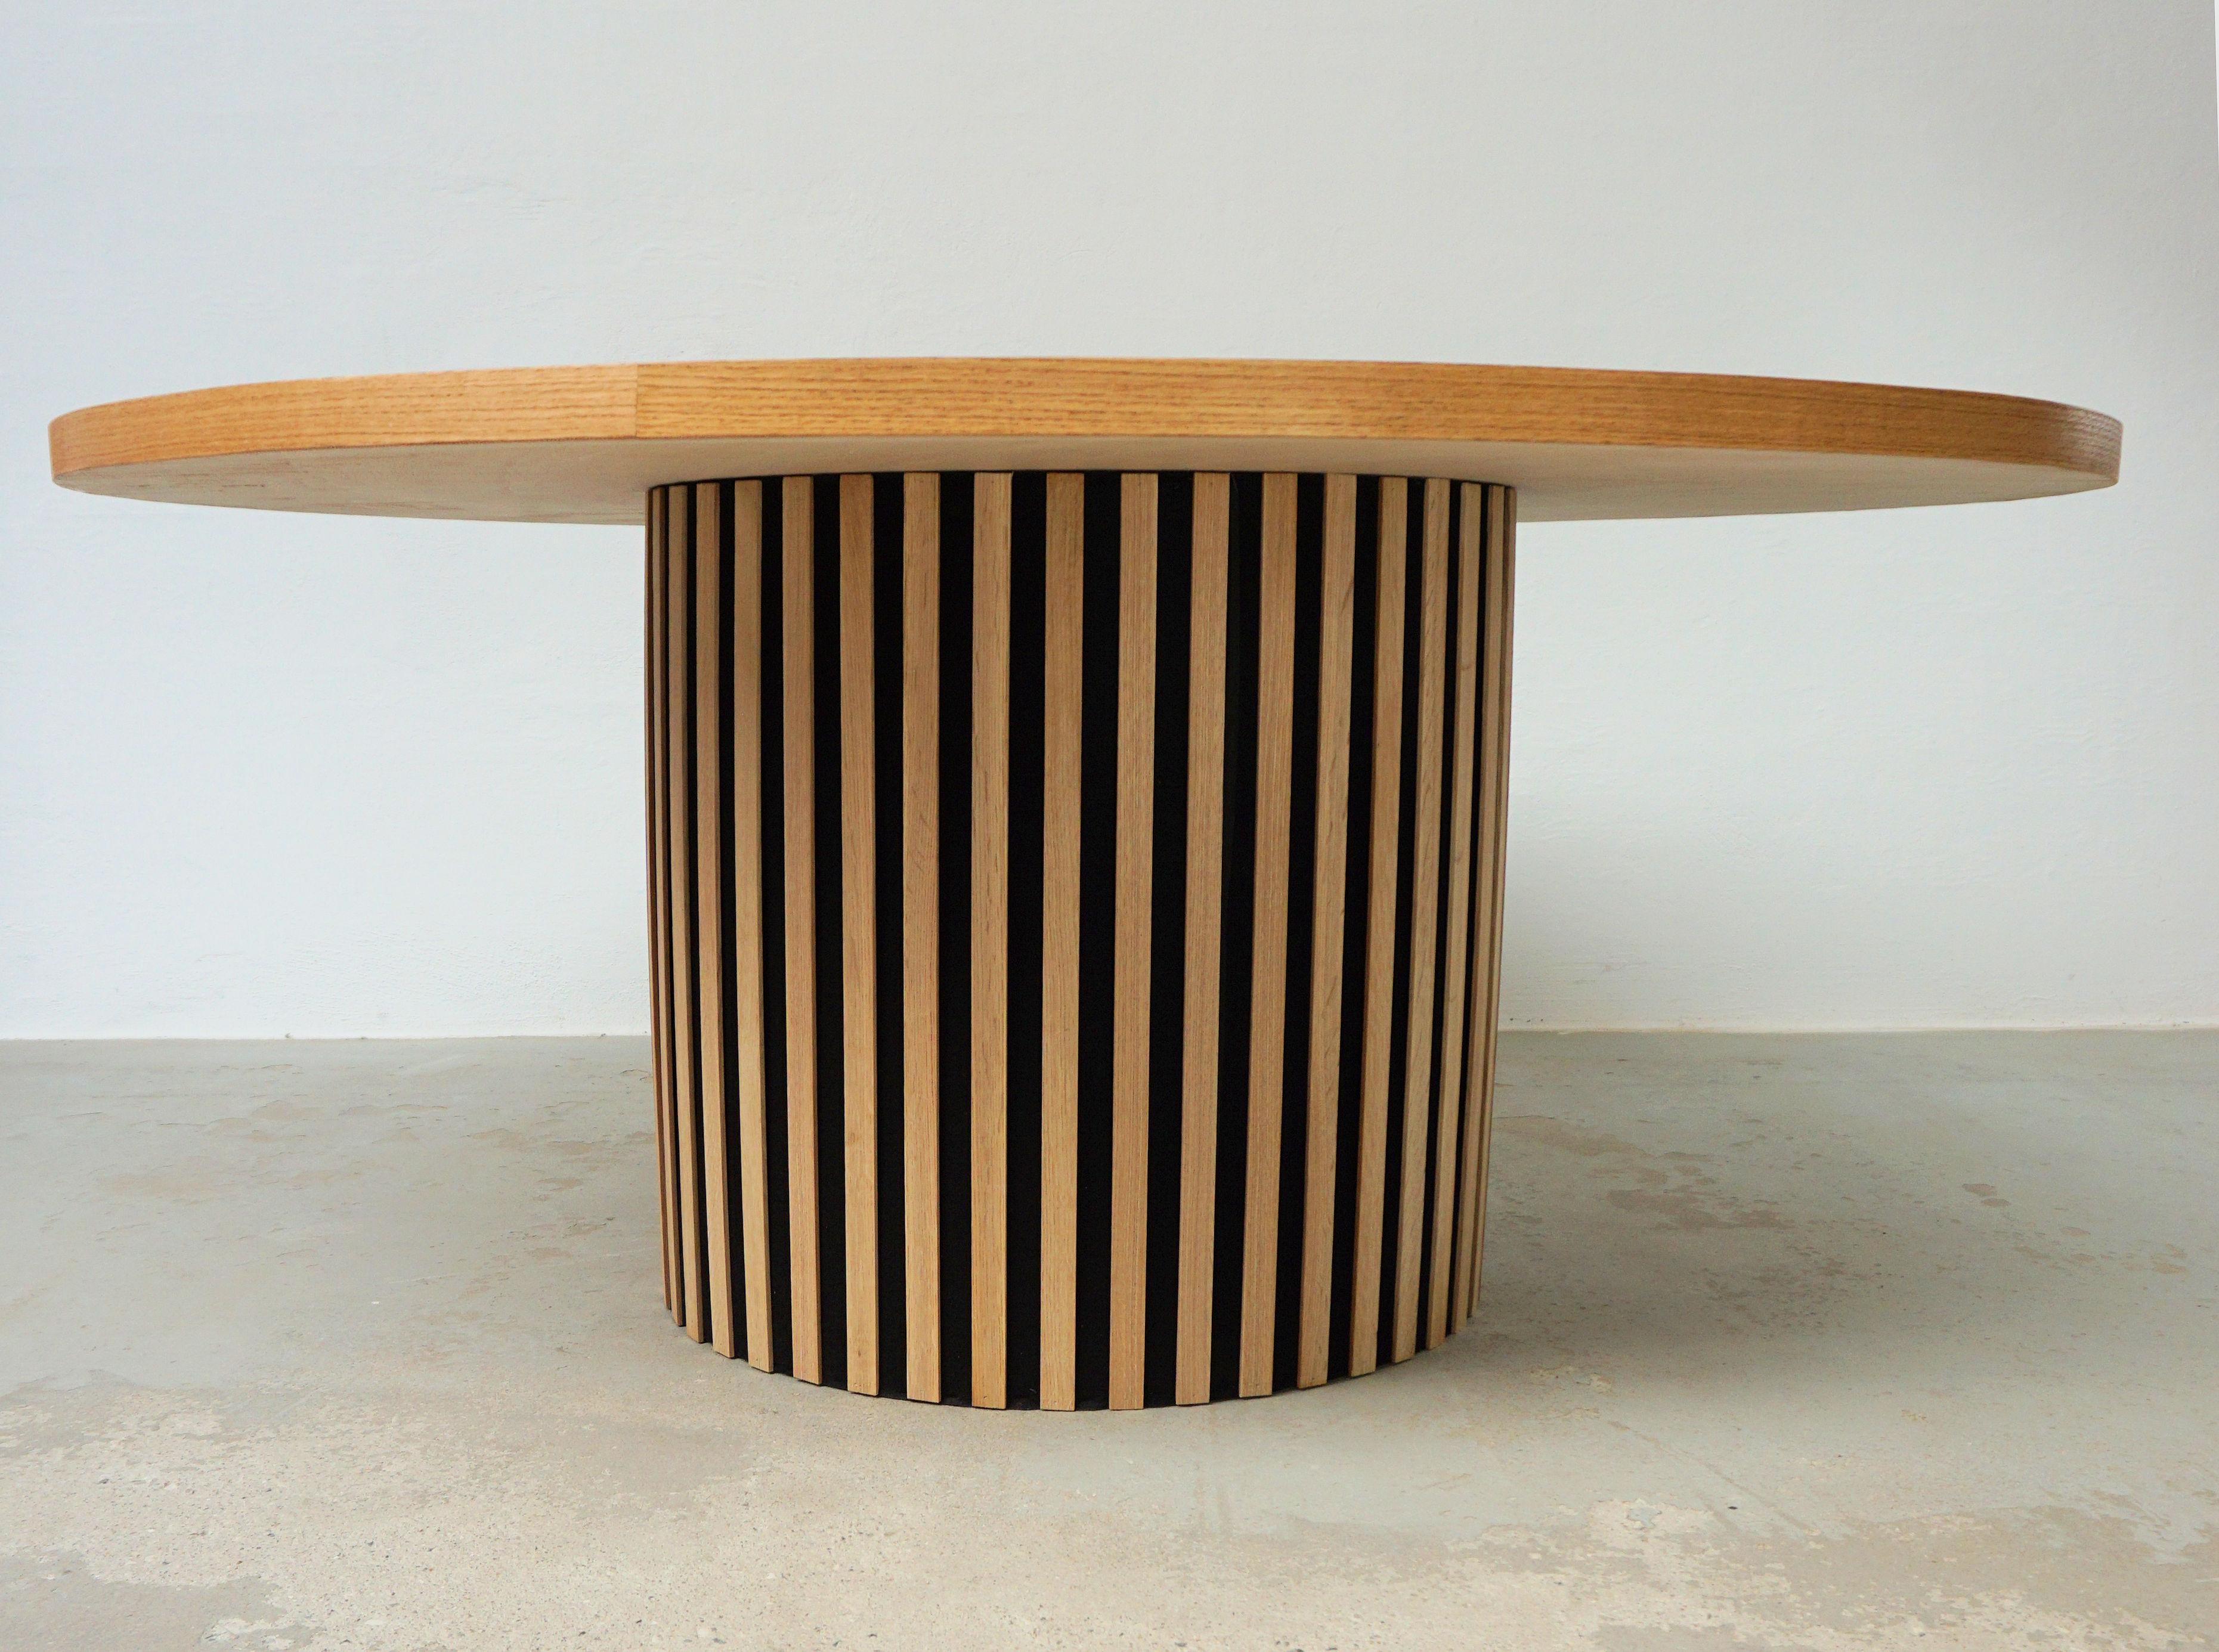 Runder Esstisch aus Eiche im dänischen Modernismus, handgefertigt.

Das Modell NH11, ein handgefertigter modernistischer Esstisch, entworfen von Nikolaj Hansen, hat eine runde Tischplatte aus massiver Eiche, die in einem parallelogrammförmigen